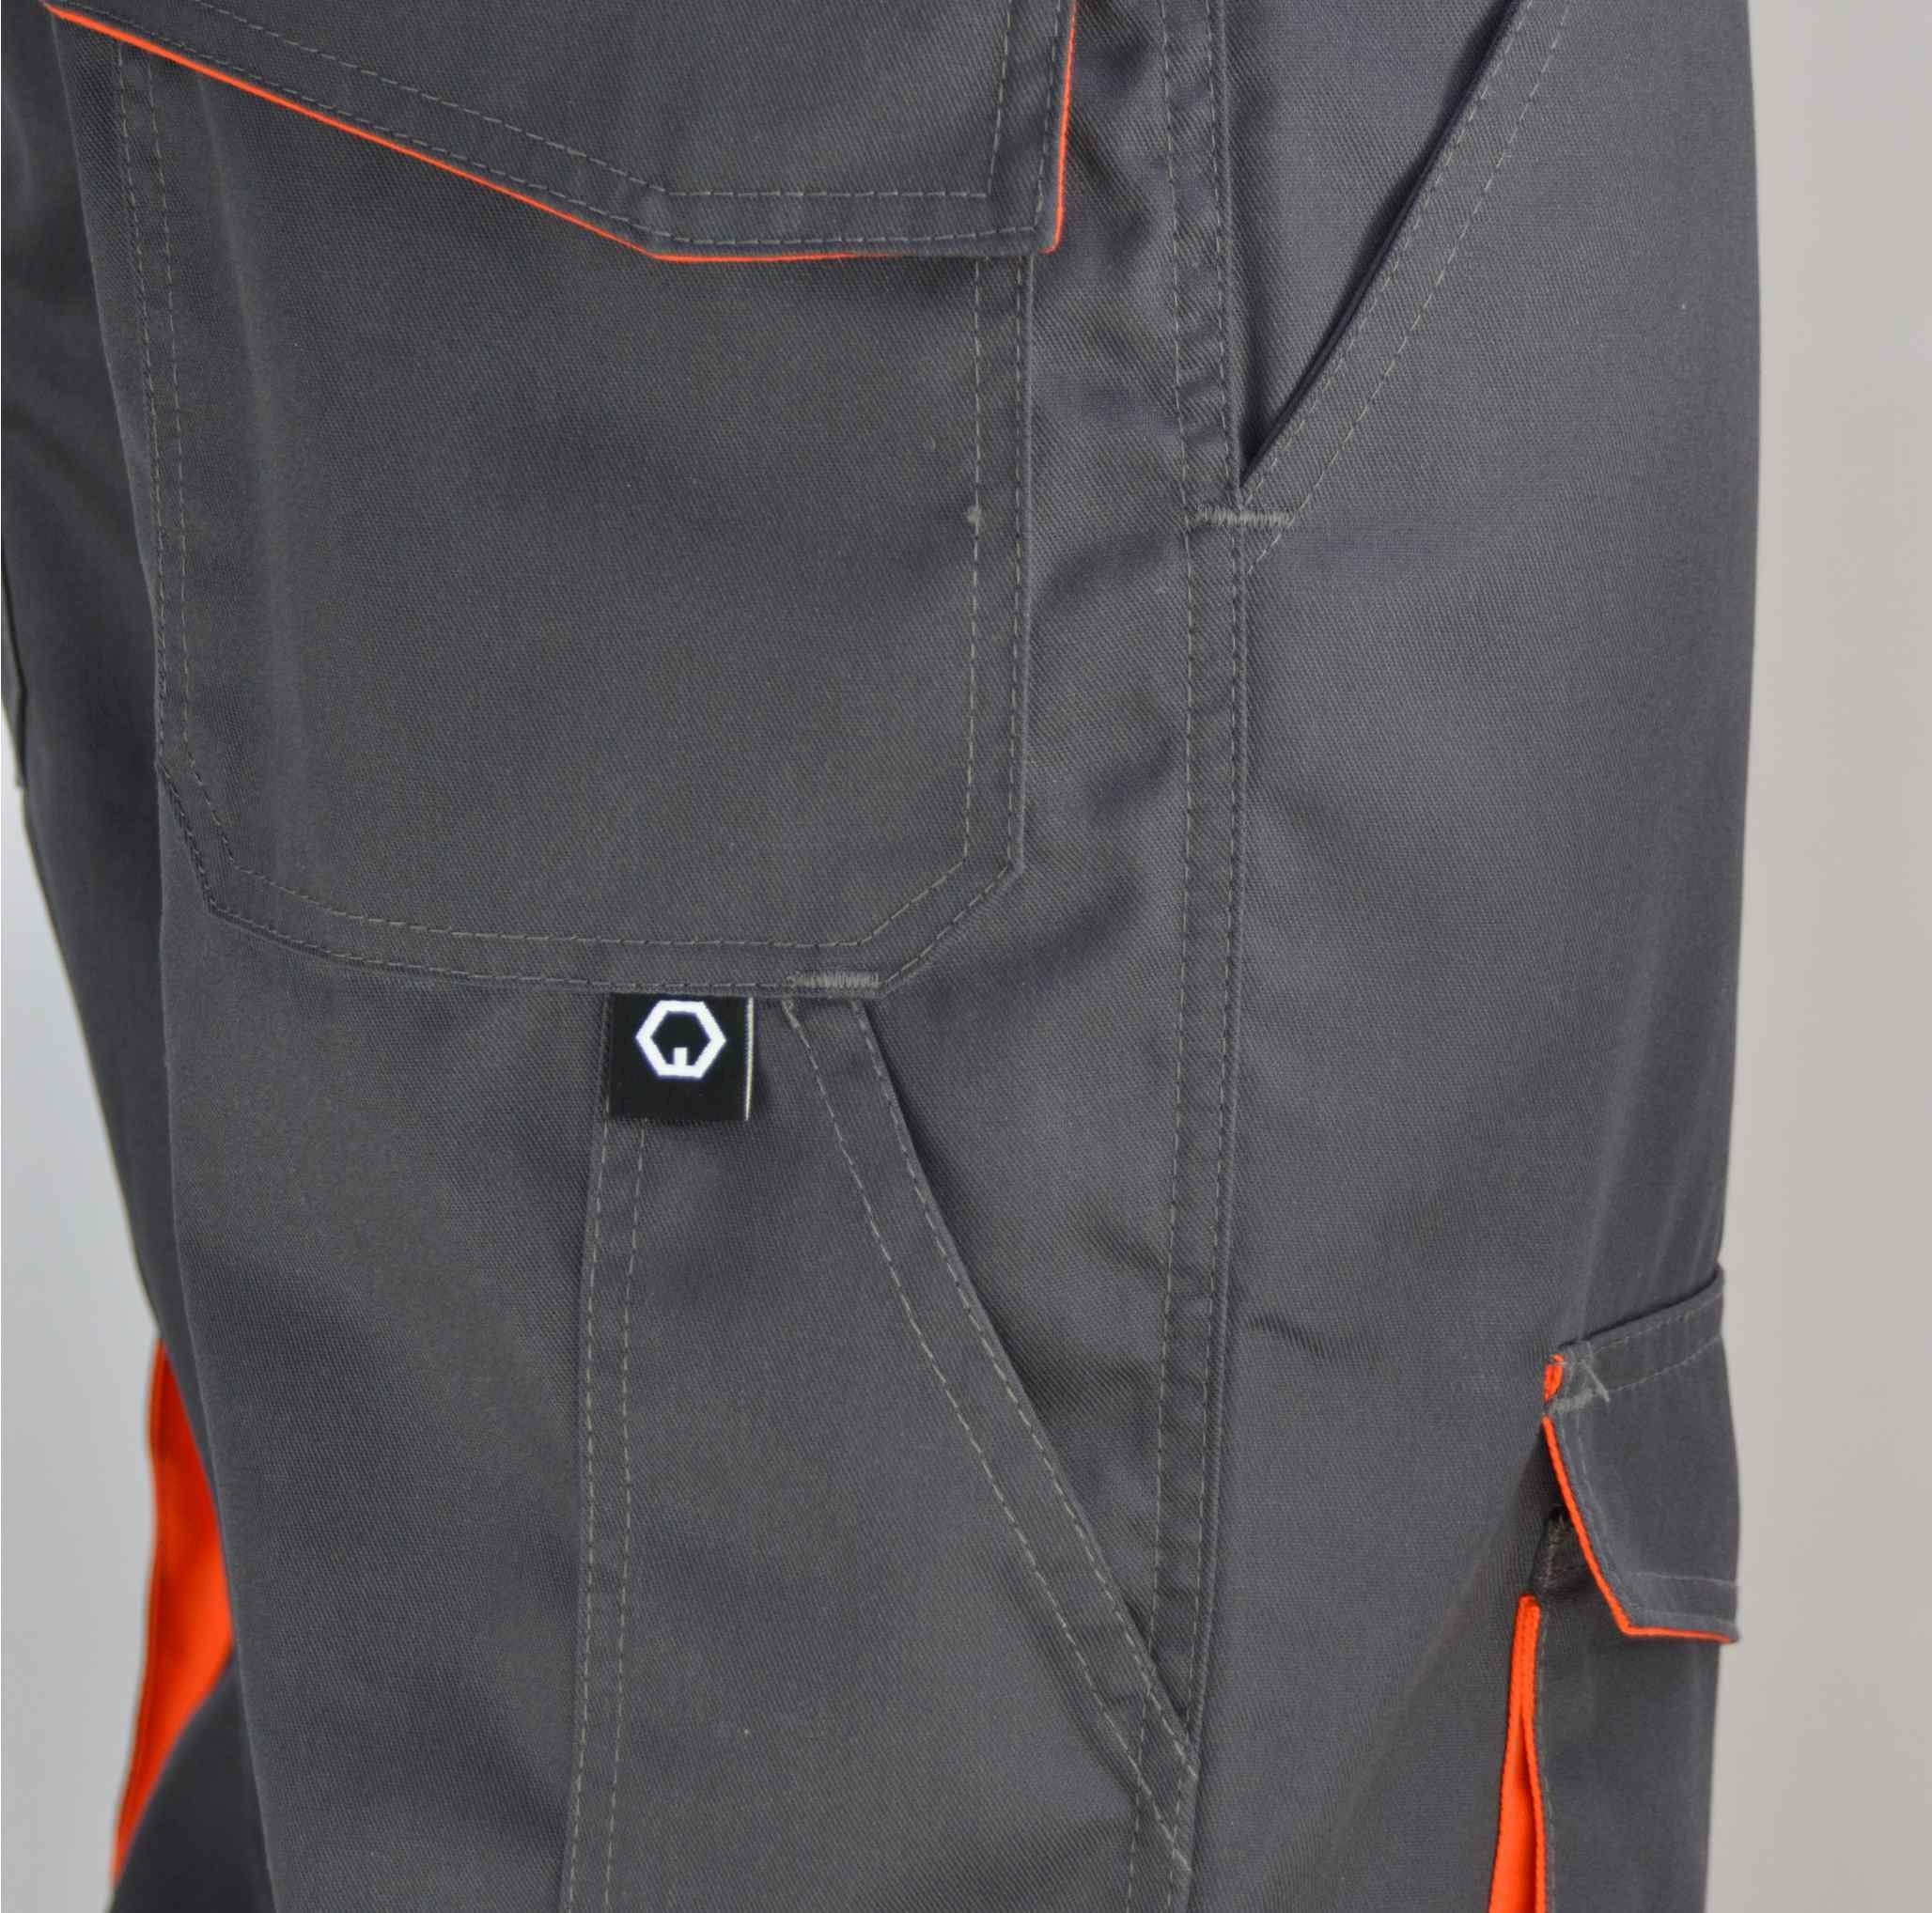 schwarz/grau Qualität Farbig Stoffeinsätze Grau/Orange Arbeitshose Cargohose 2 elastische workawear Top